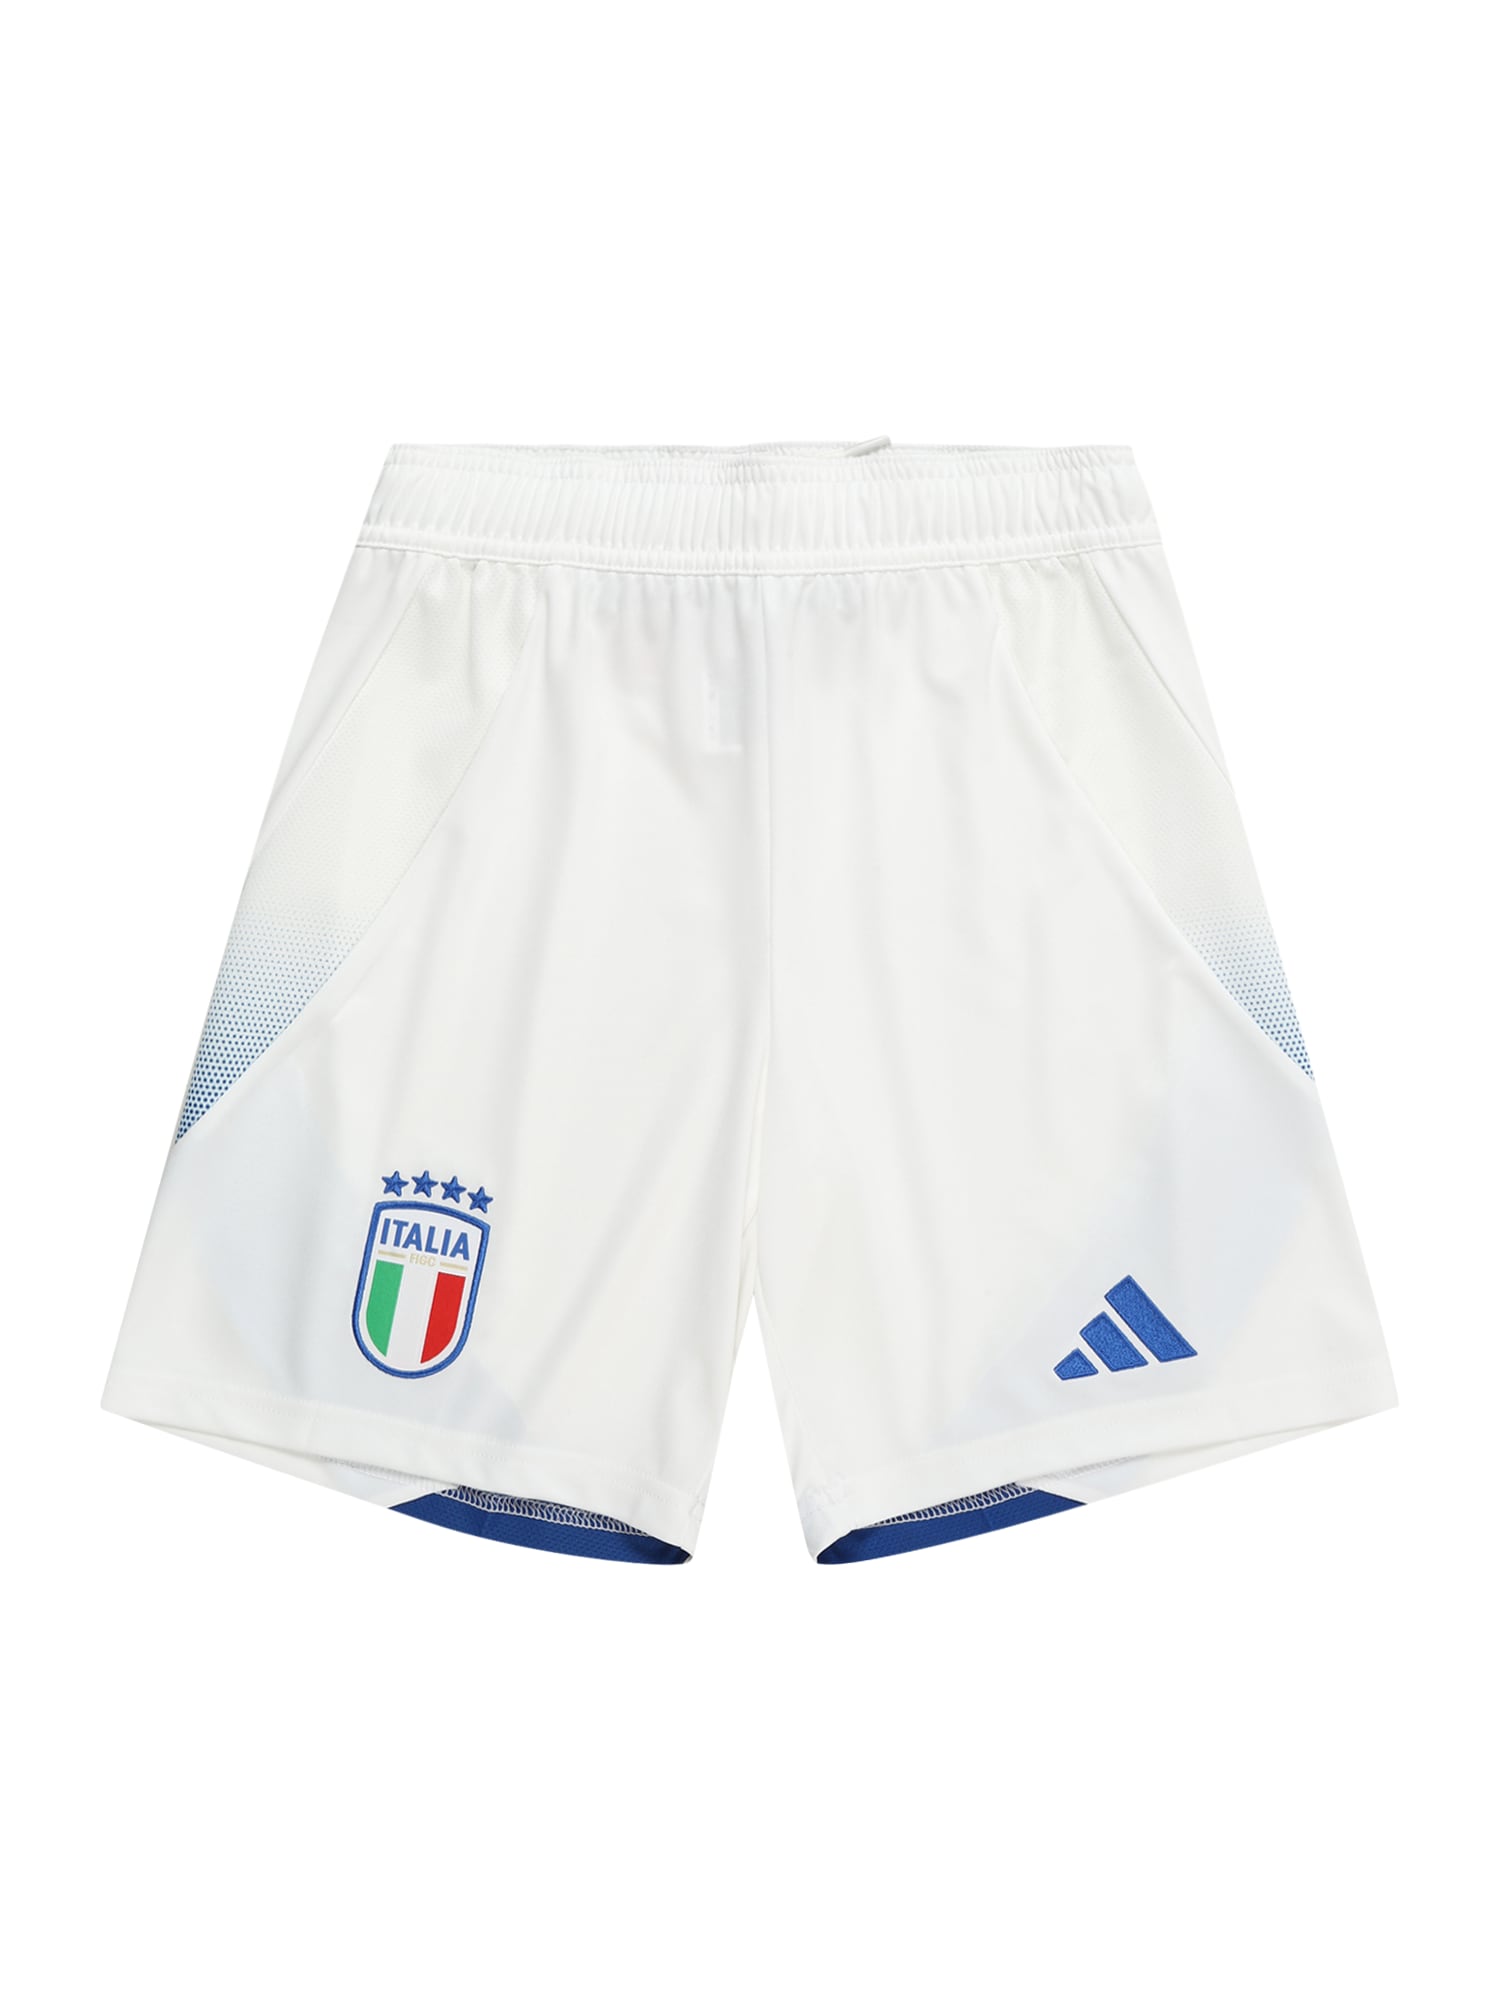 ADIDAS PERFORMANCE Sportinės kelnės 'Italy 24' mėlyna / žalia / vyšninė spalva / balta